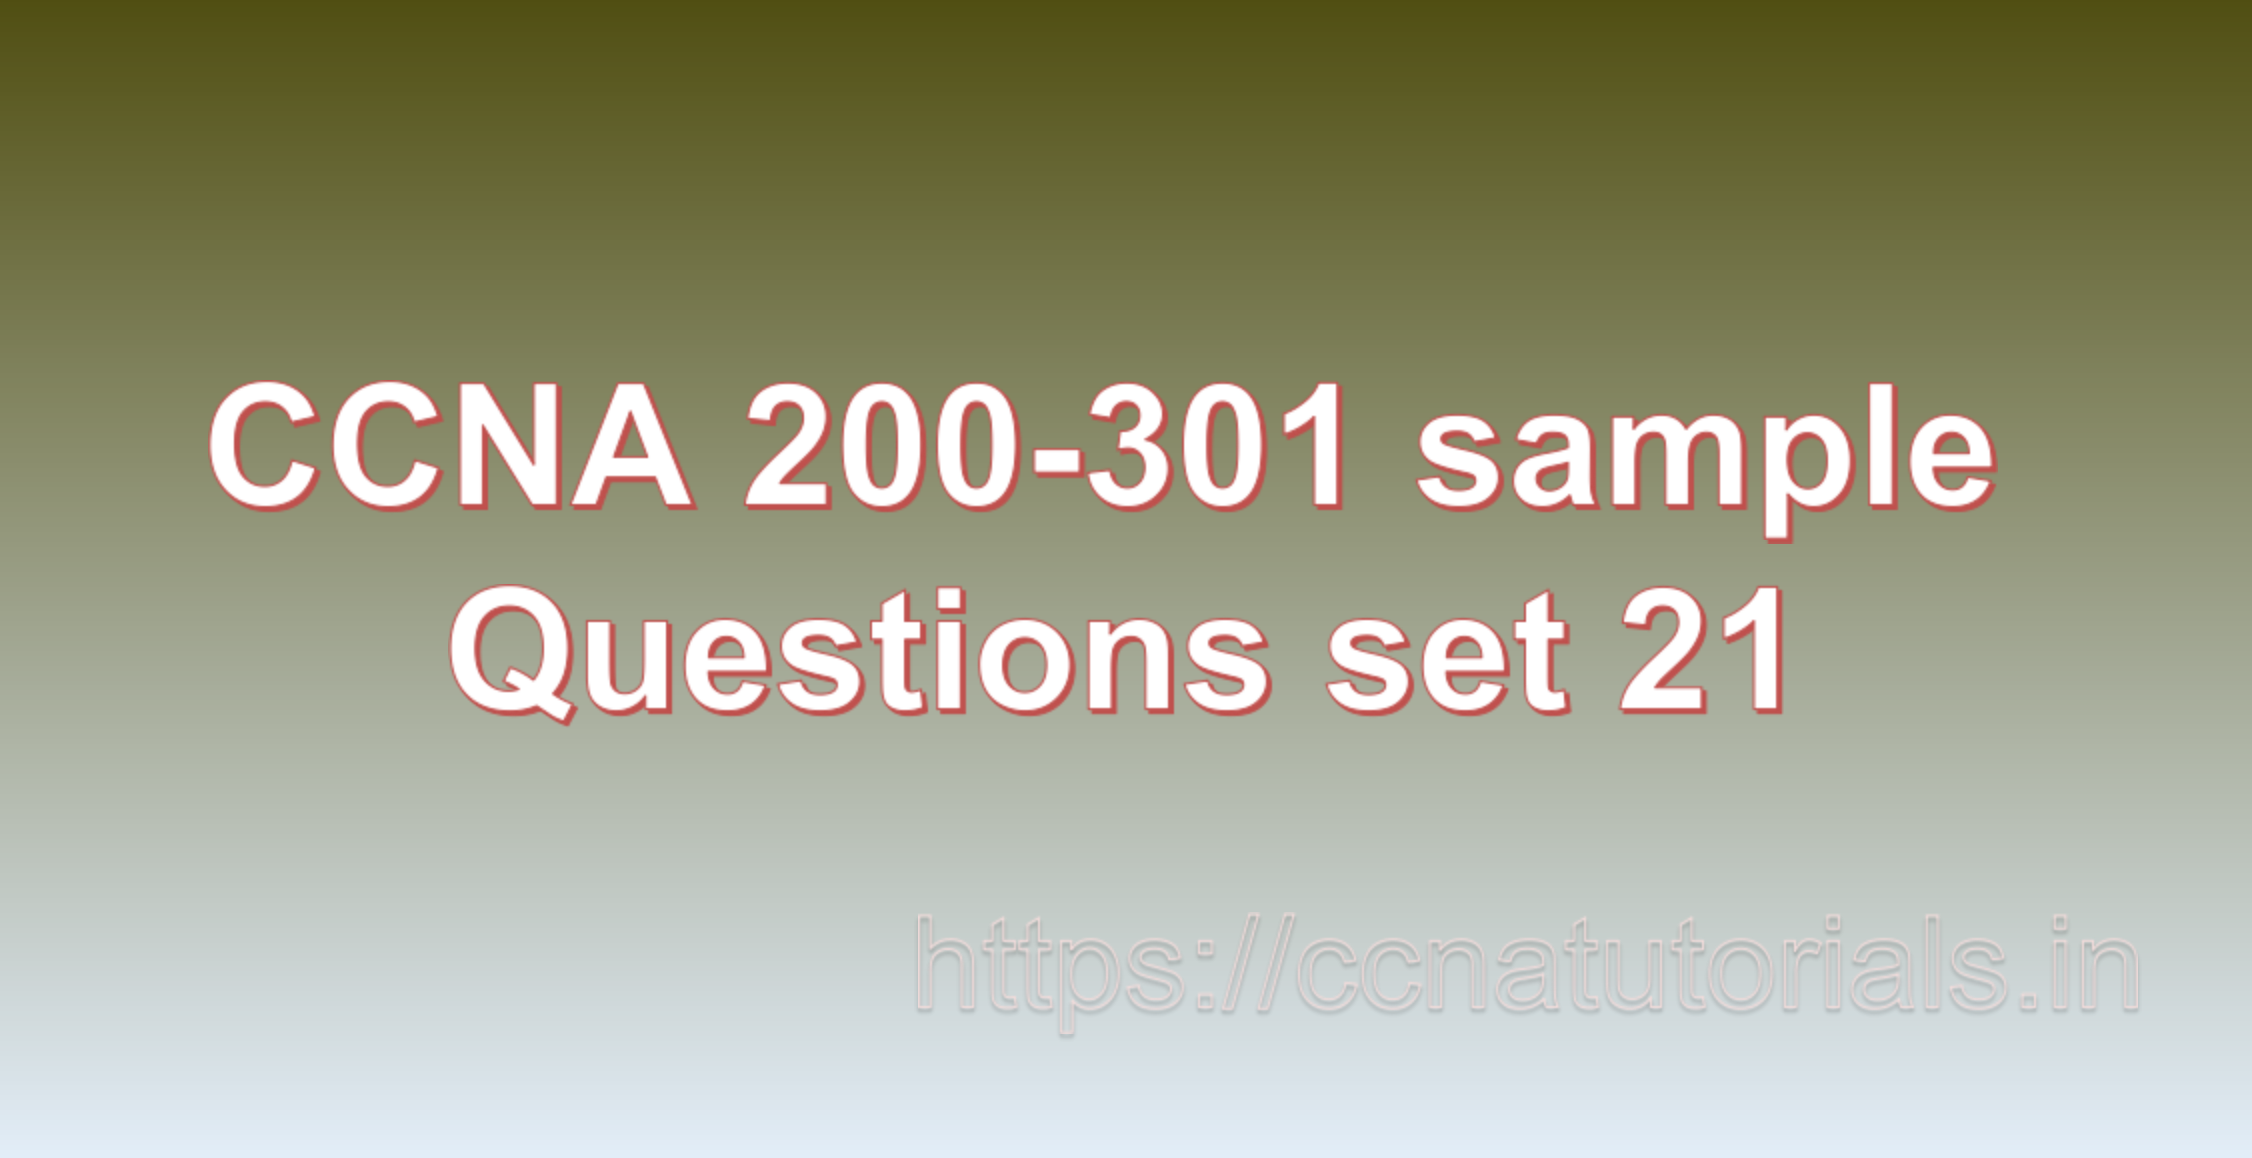 ccna sample questions set 21, ccna tutorials, CCNA Exam, ccna